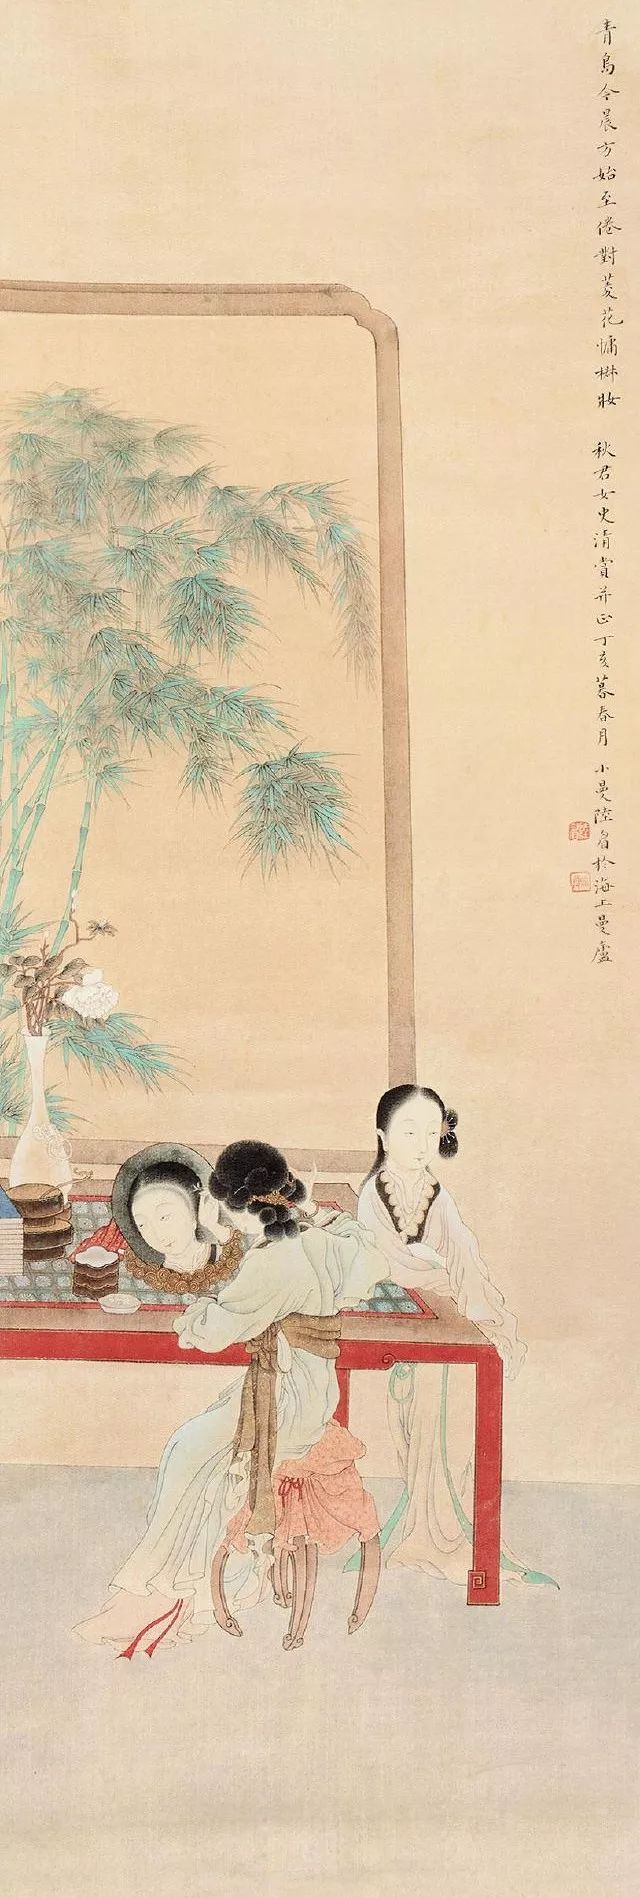 陆小曼《仕女图》,1947年